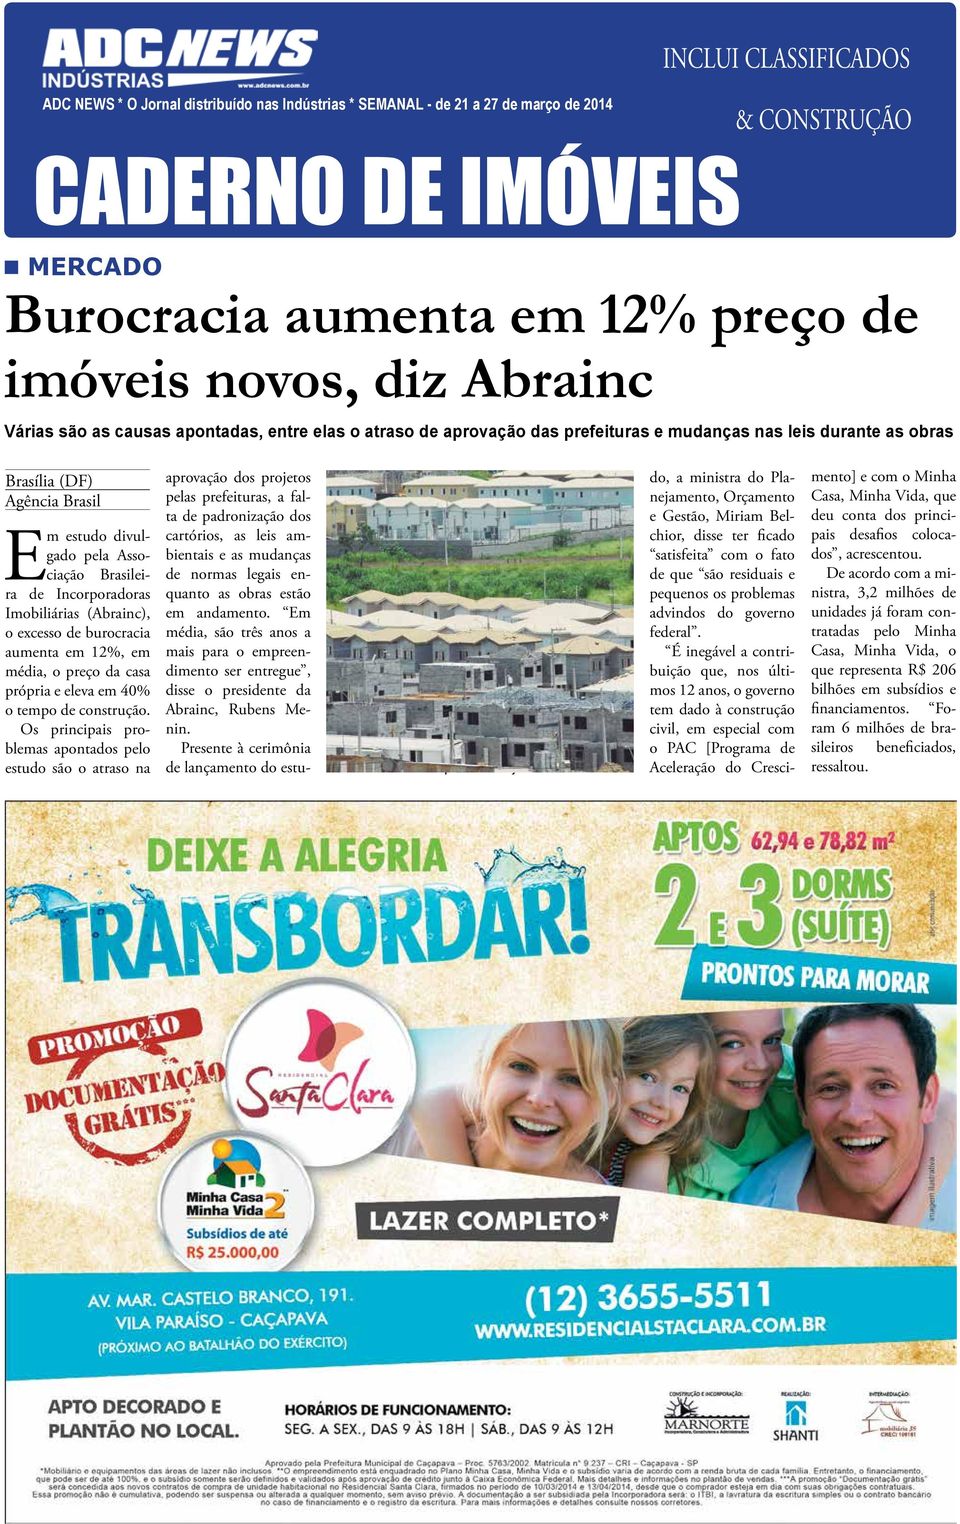 Brasileira de Incorporadoras Imobiliárias (Abrainc), o excesso de burocracia aumenta em 12%, em média, o preço da casa própria e eleva em 40% o tempo de construção.